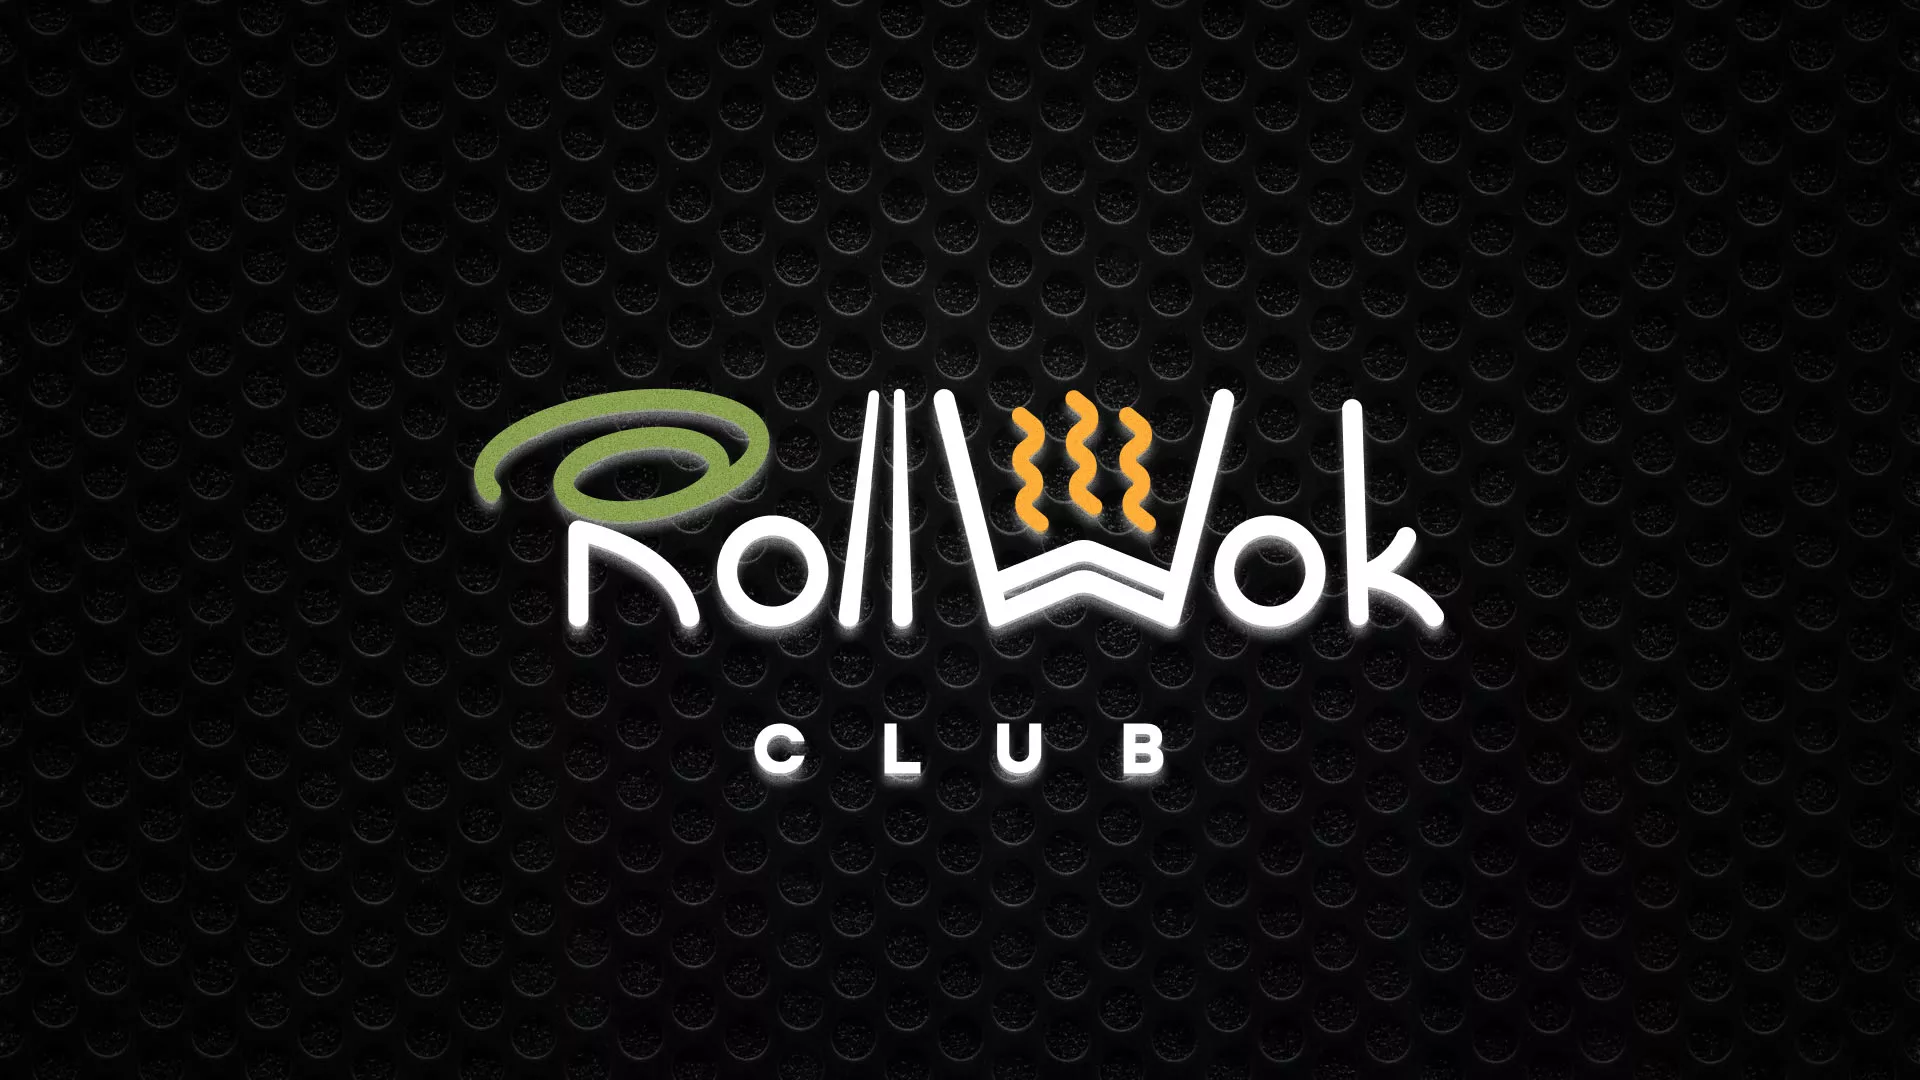 Брендирование торговых точек суши-бара «Roll Wok Club» в Мурманске